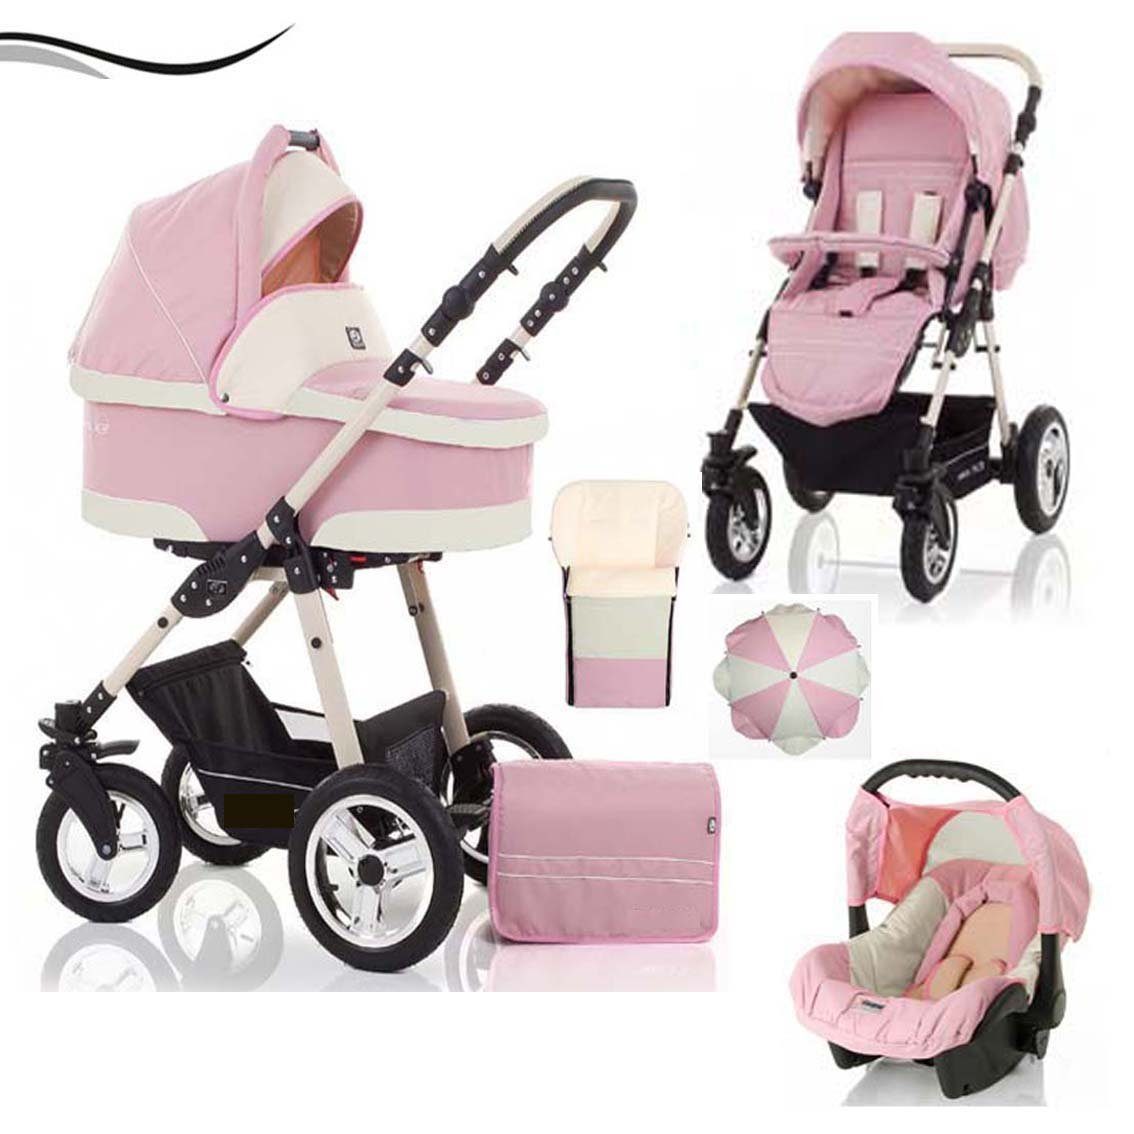 babies-on-wheels Kombi-Kinderwagen City Star 5 in 1 inkl. Autositz, Sonnenschirm und Fußsack - 18 Teile - von Geburt bis 4 Jahre in 16 Farben Rosa-Creme